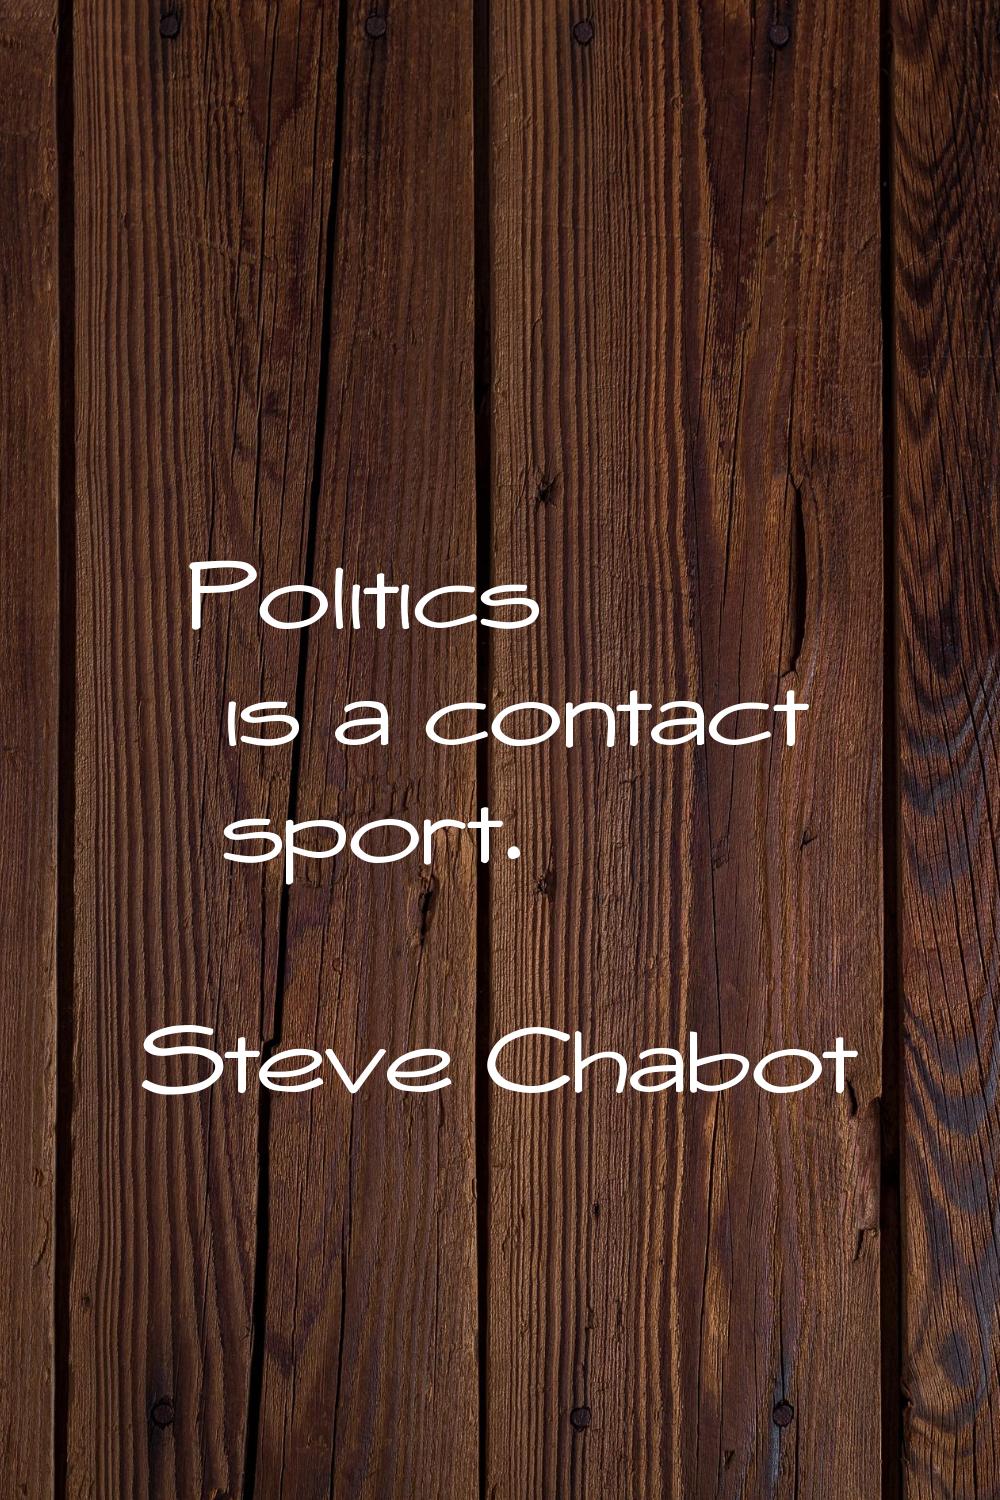 Politics is a contact sport.